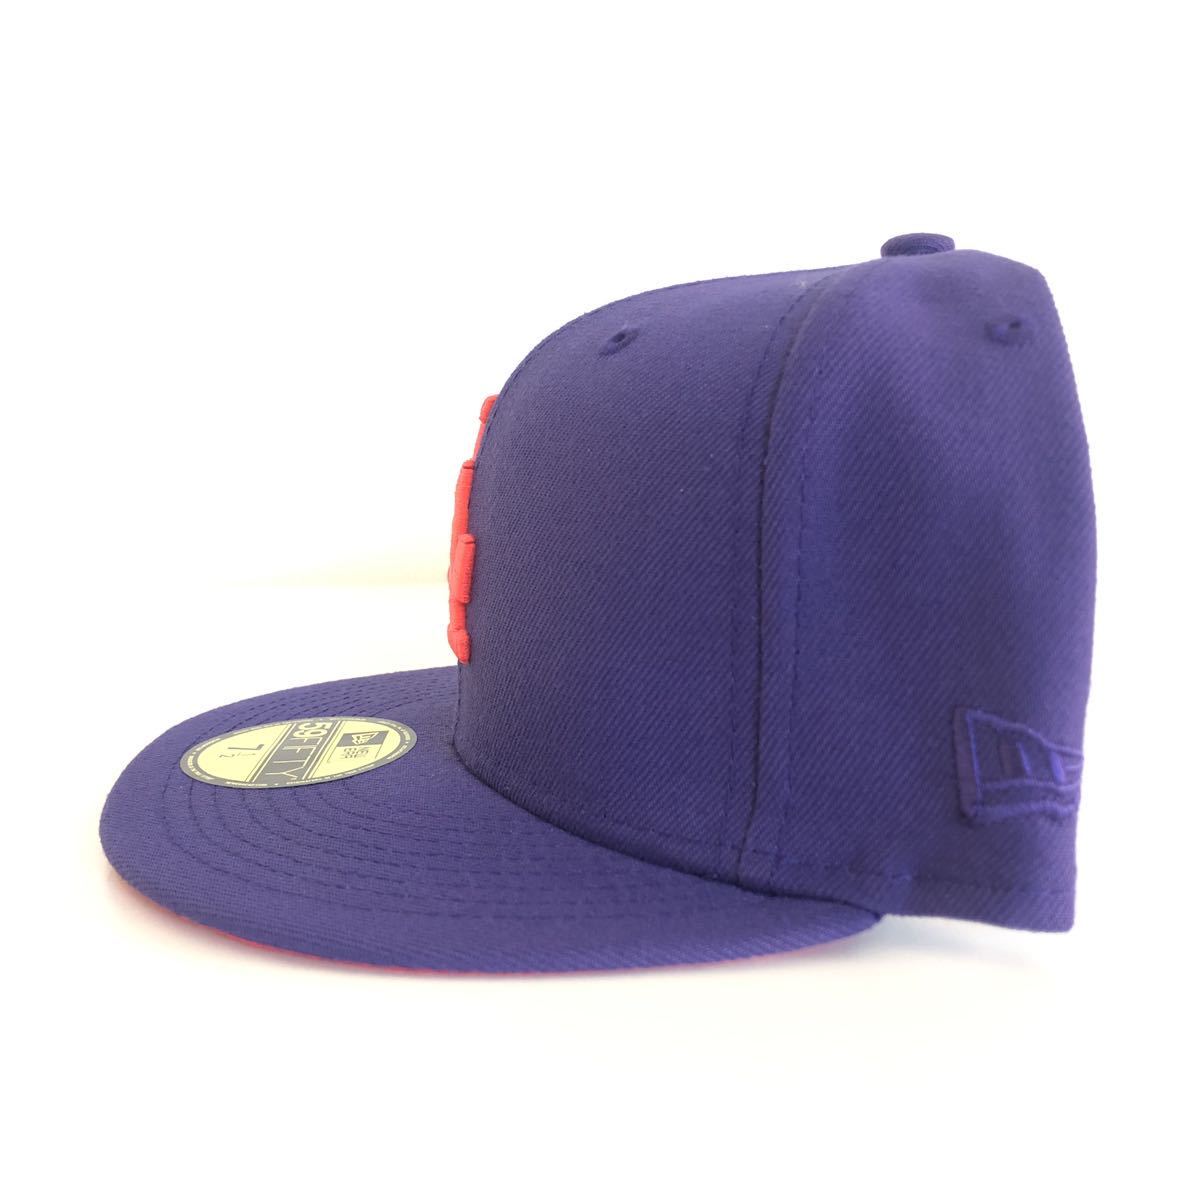 新品 New Era ツバ裏レッド 59FIFTY LA Dodgers Purple Cap Red Under Visor Brim 7 1/2 59.6cm ニューエラ ドジャース キャップ パープル_画像4